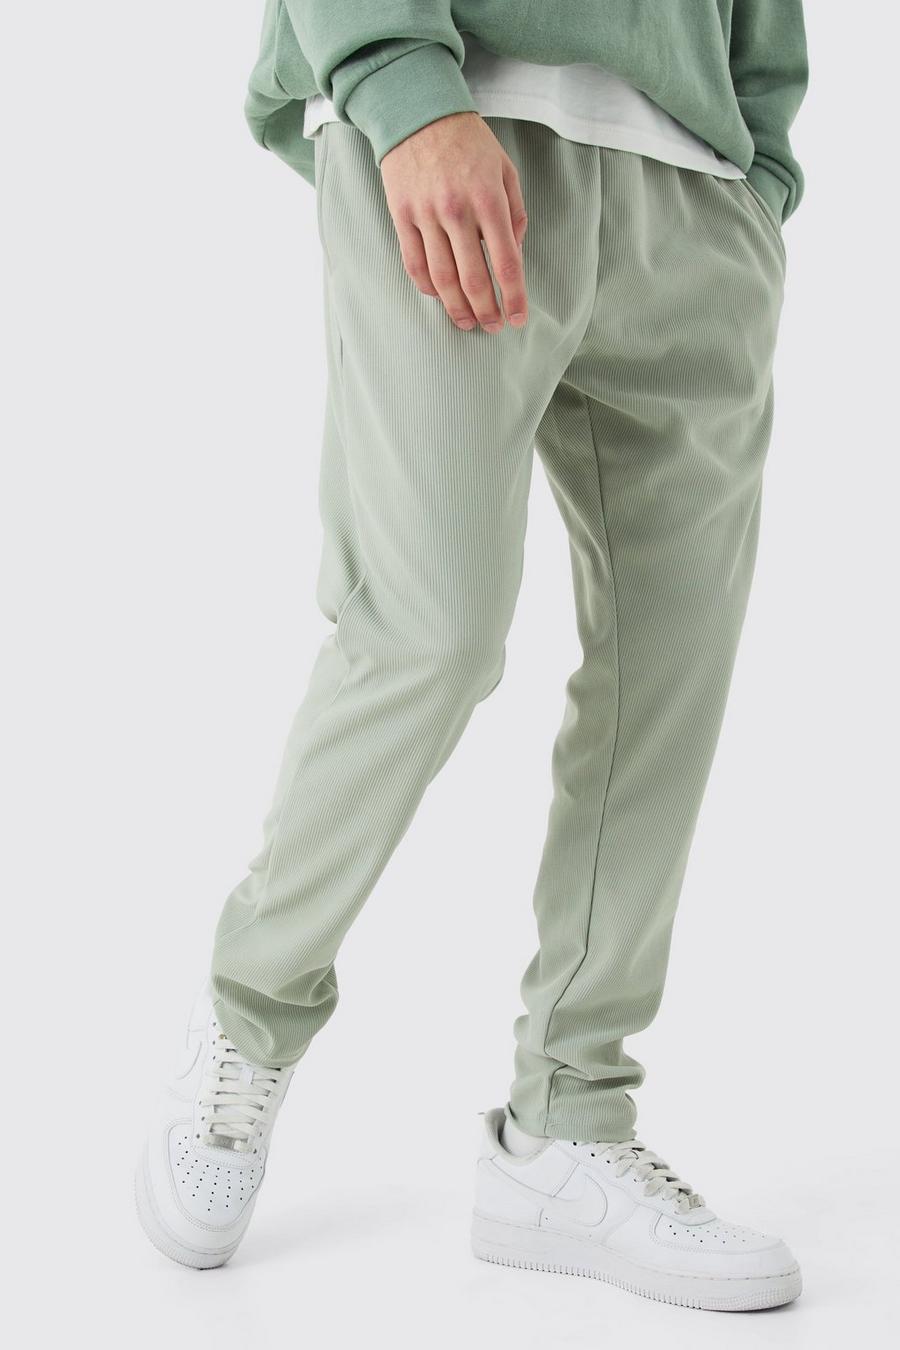 Pantalón deportivo plisado ajustado, Sage image number 1